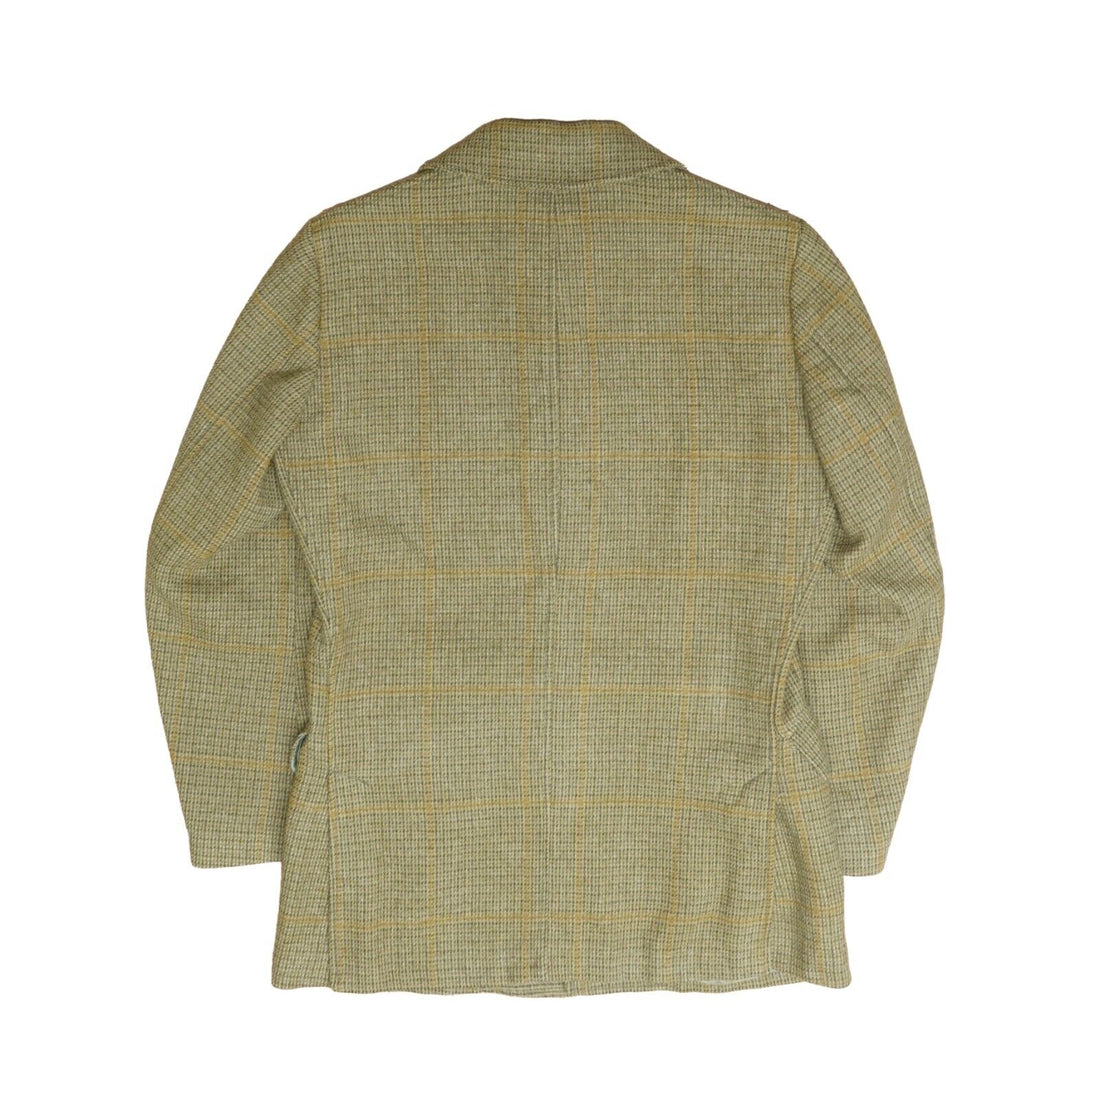 Vintage Pendleton Wool Overcoat Jacket Size Large